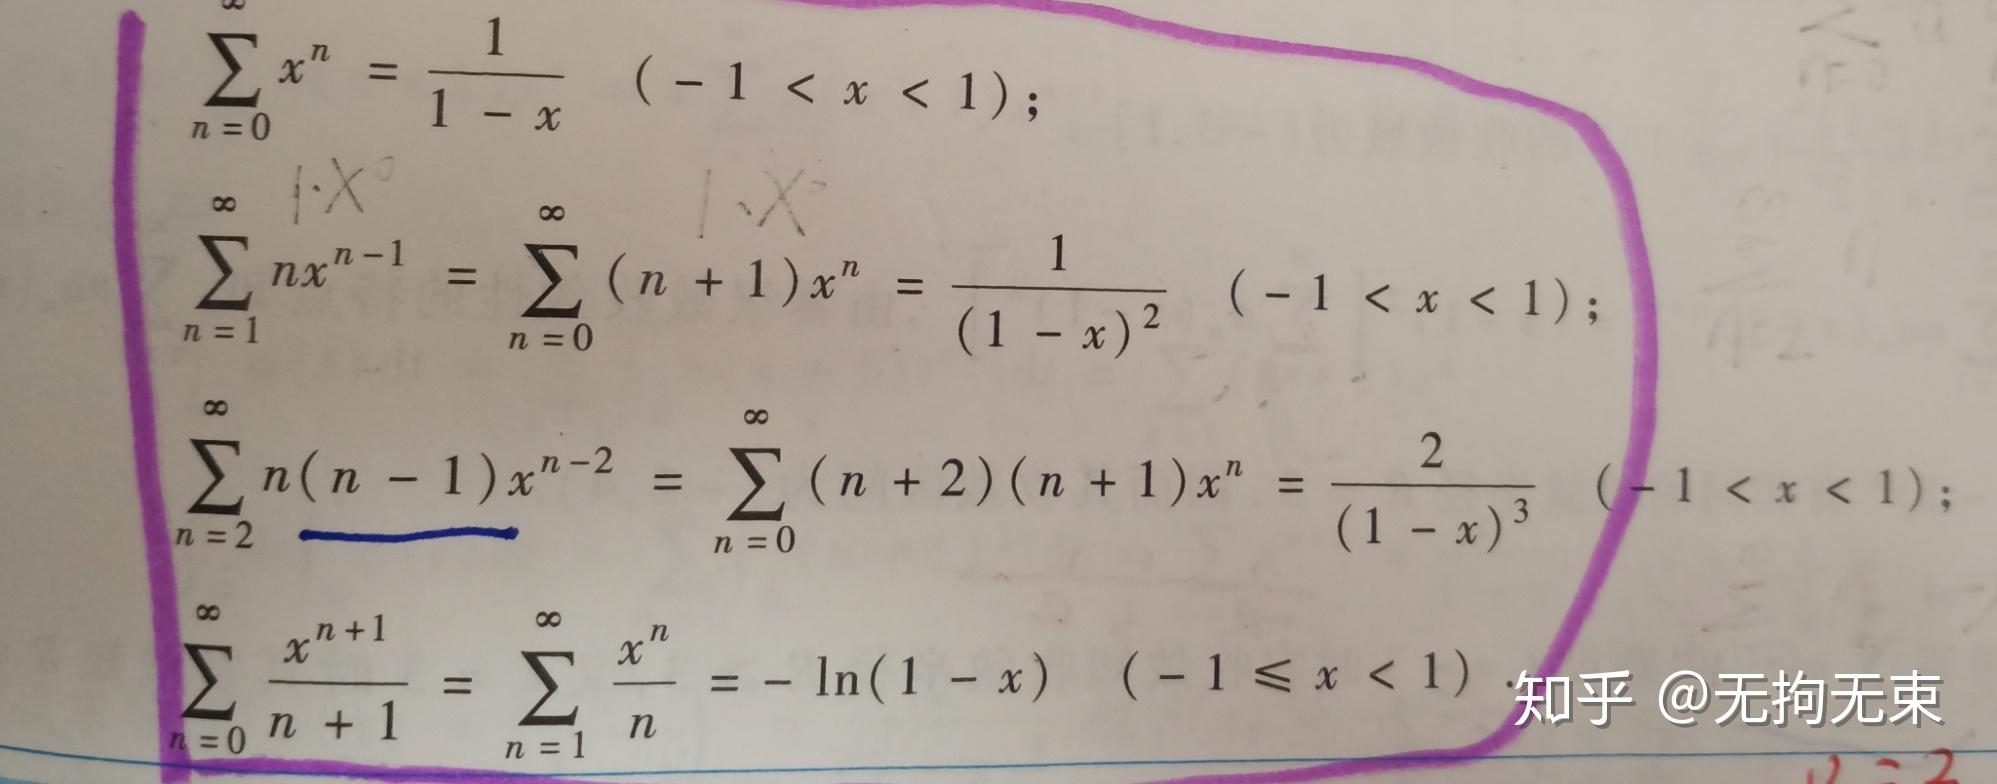 2)求幂级数在x处的展开式